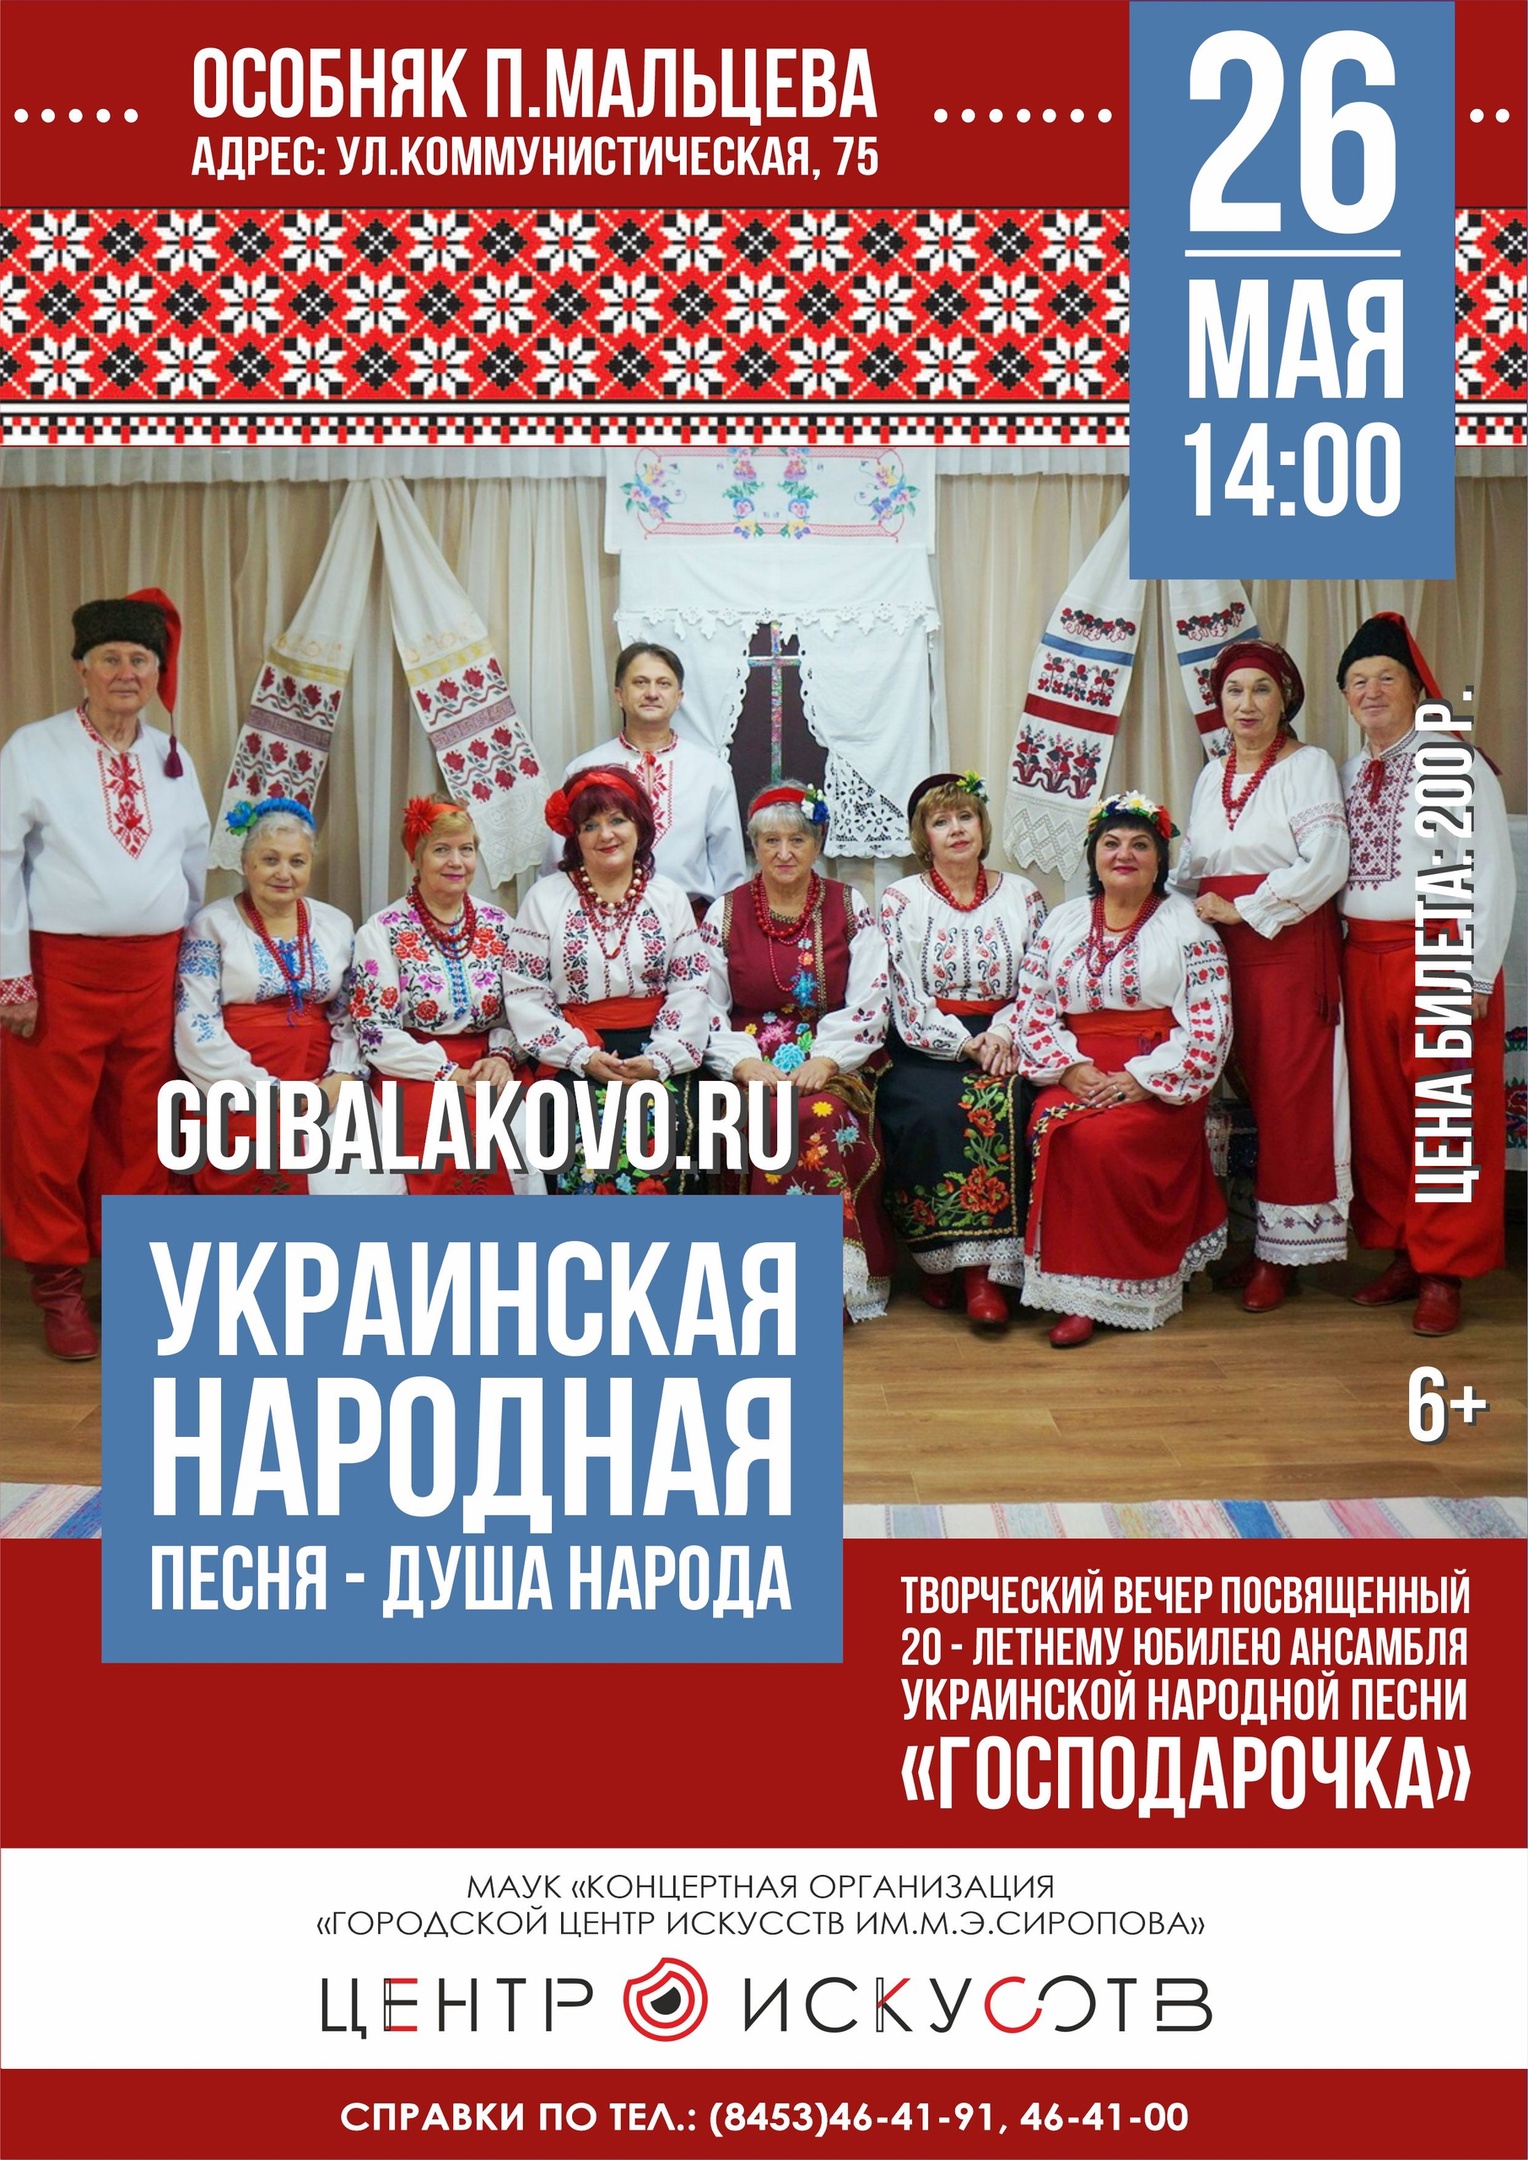 Самодеятельный ансамбль украинской народной песни «Господарочка» отмечает свое 20-летие